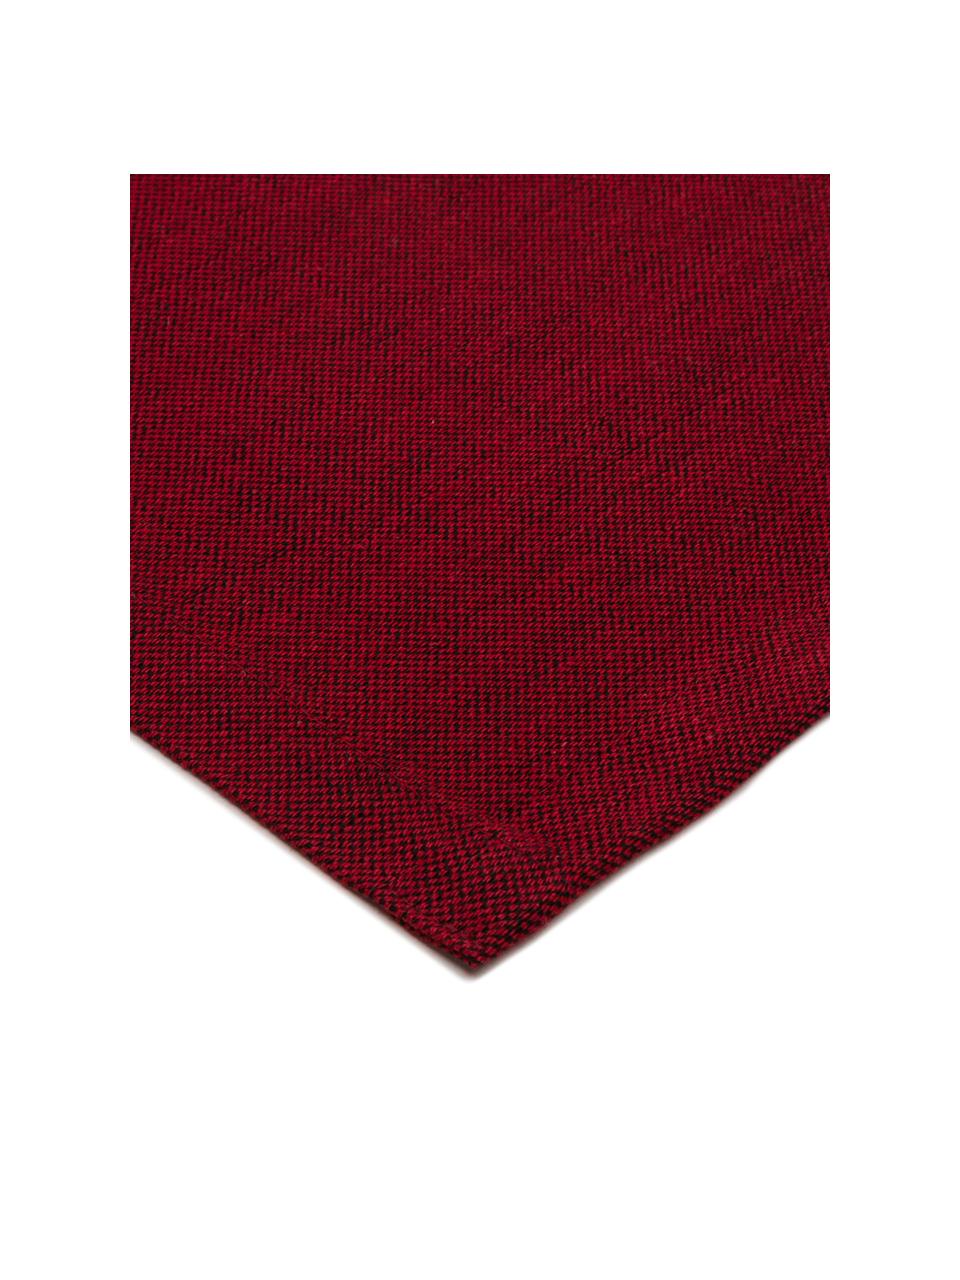 Bieżnik z mieszanki bawełny Riva, 55% bawełna, 45% poliester, Czerwony, S 40 x D 150 cm